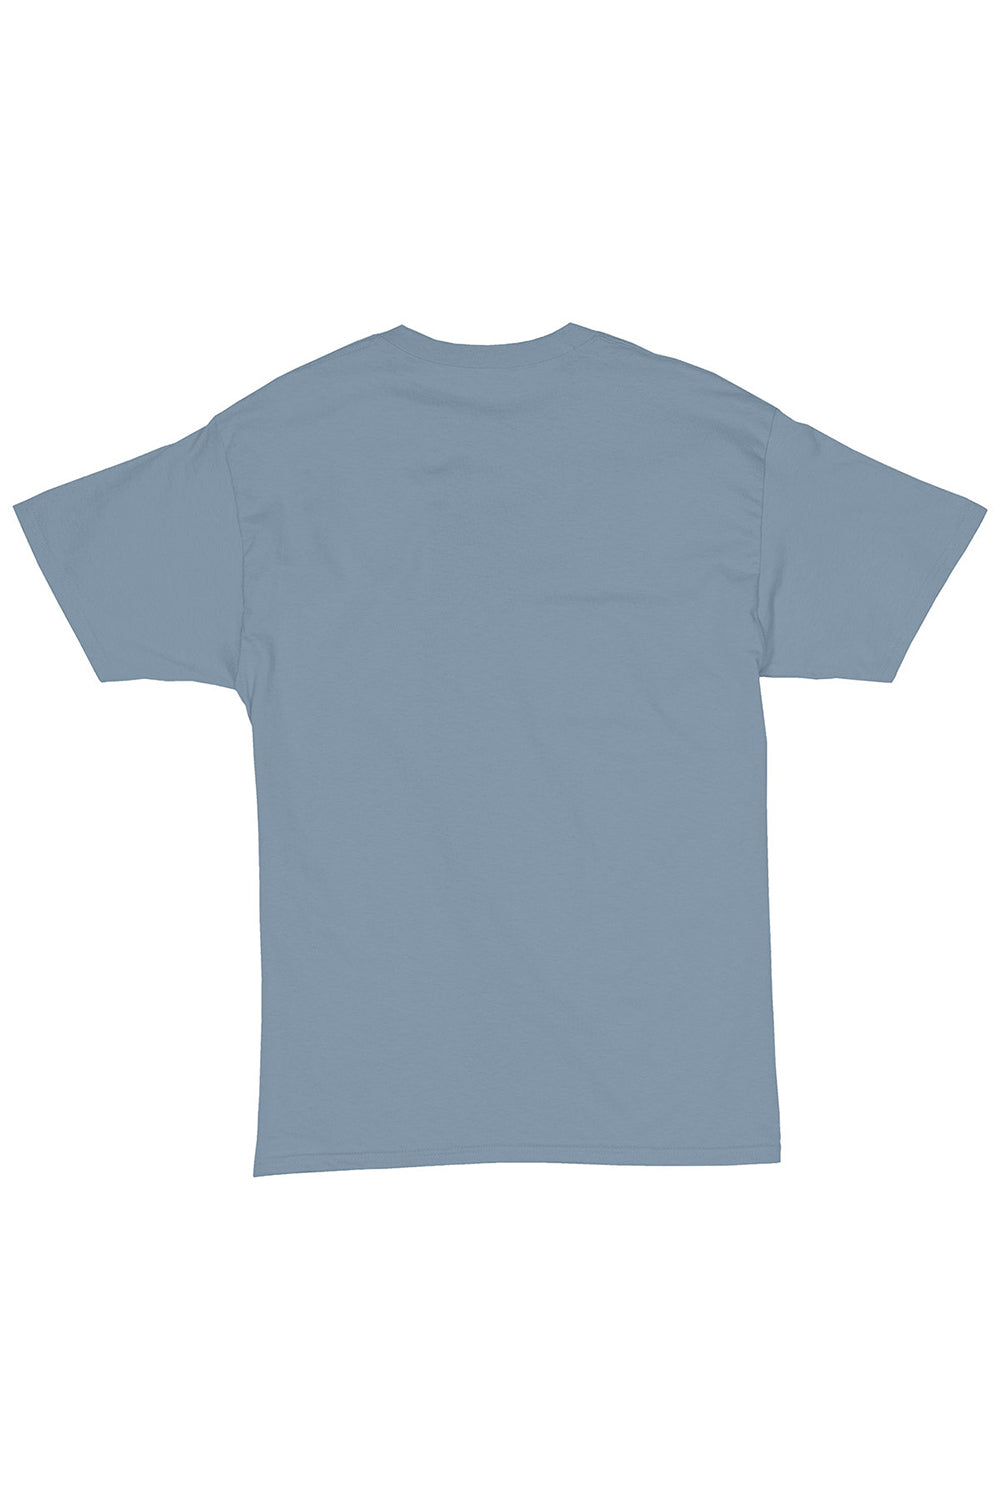 Hanes 5280 Mens ComfortSoft Short Sleeve Crewneck T-Shirt Stonewashed Blue Flat Back